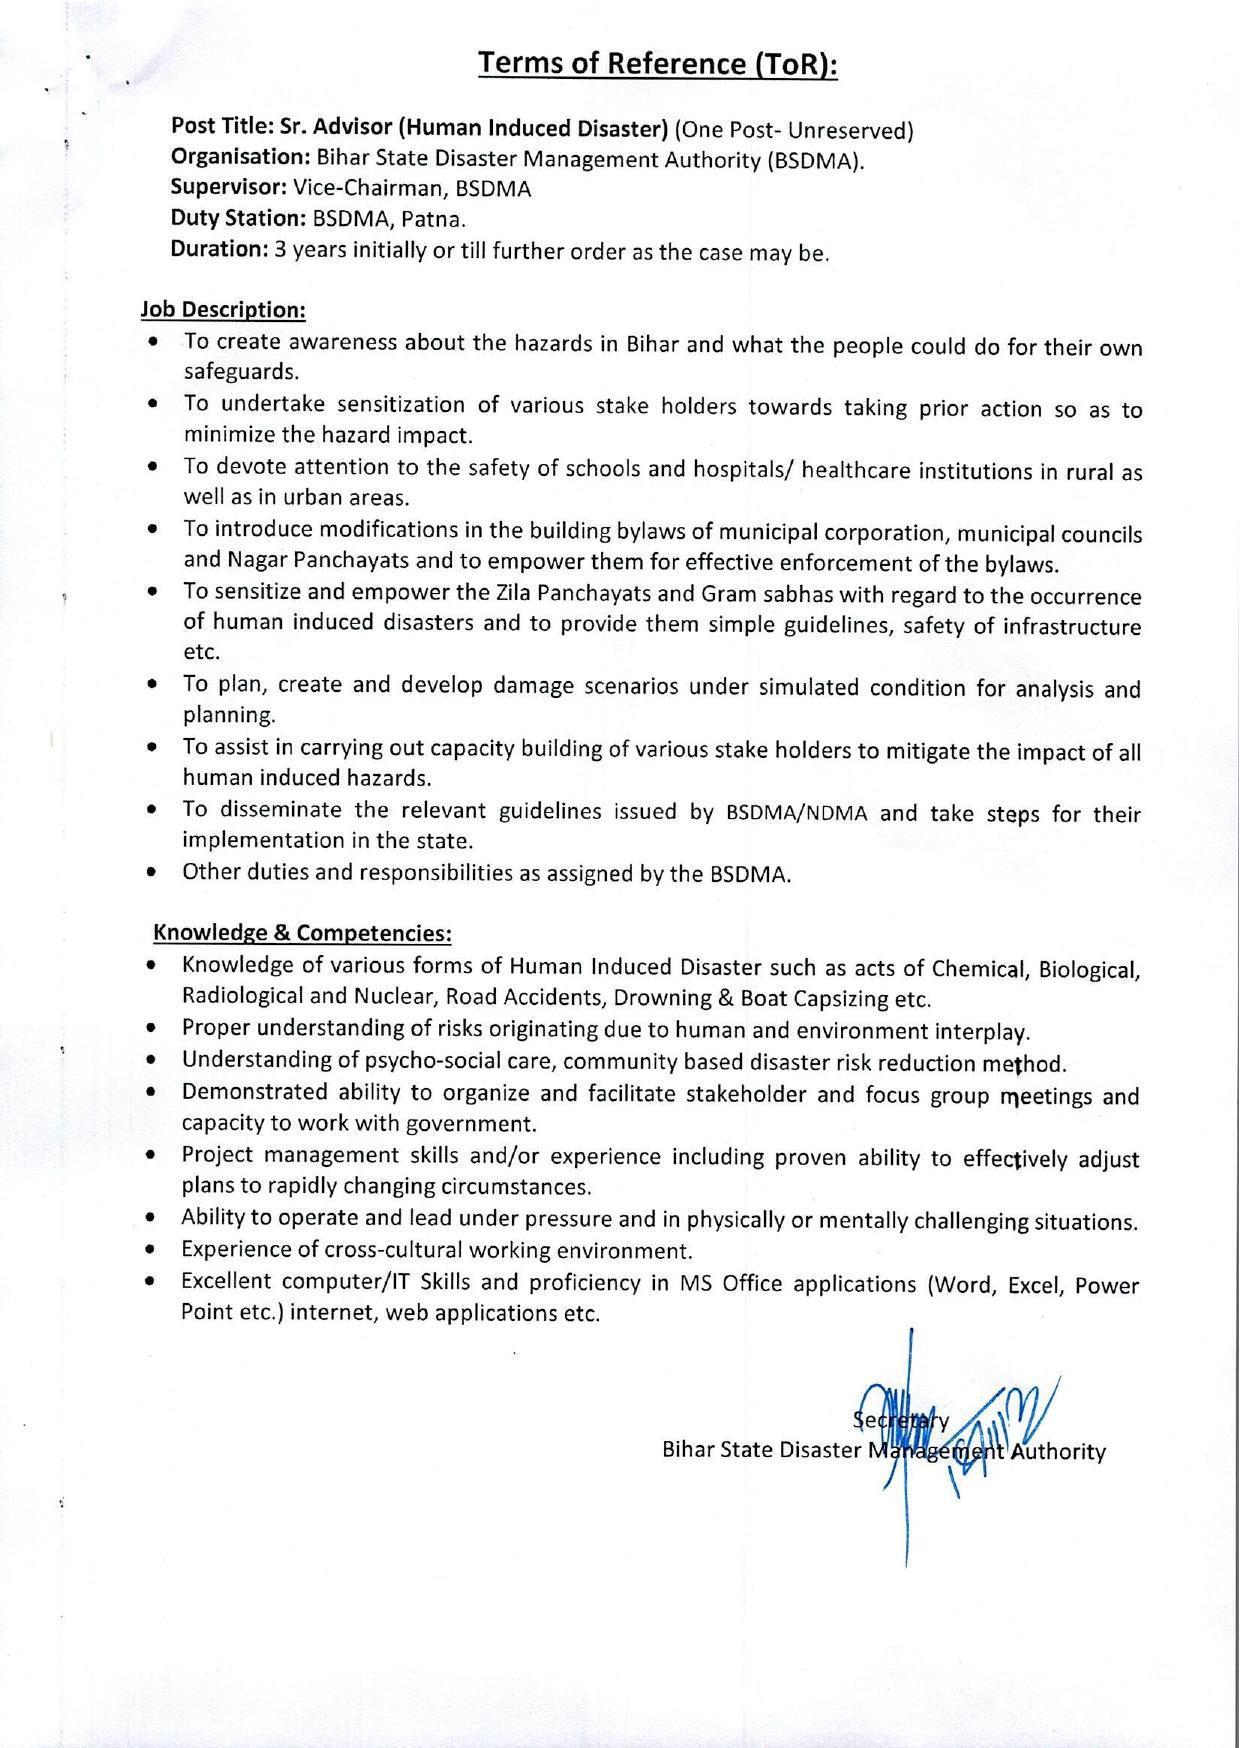 BSDMA Invites Application for Senior Advisor, Public Relation Officer Recruitment 2022 - Page 4